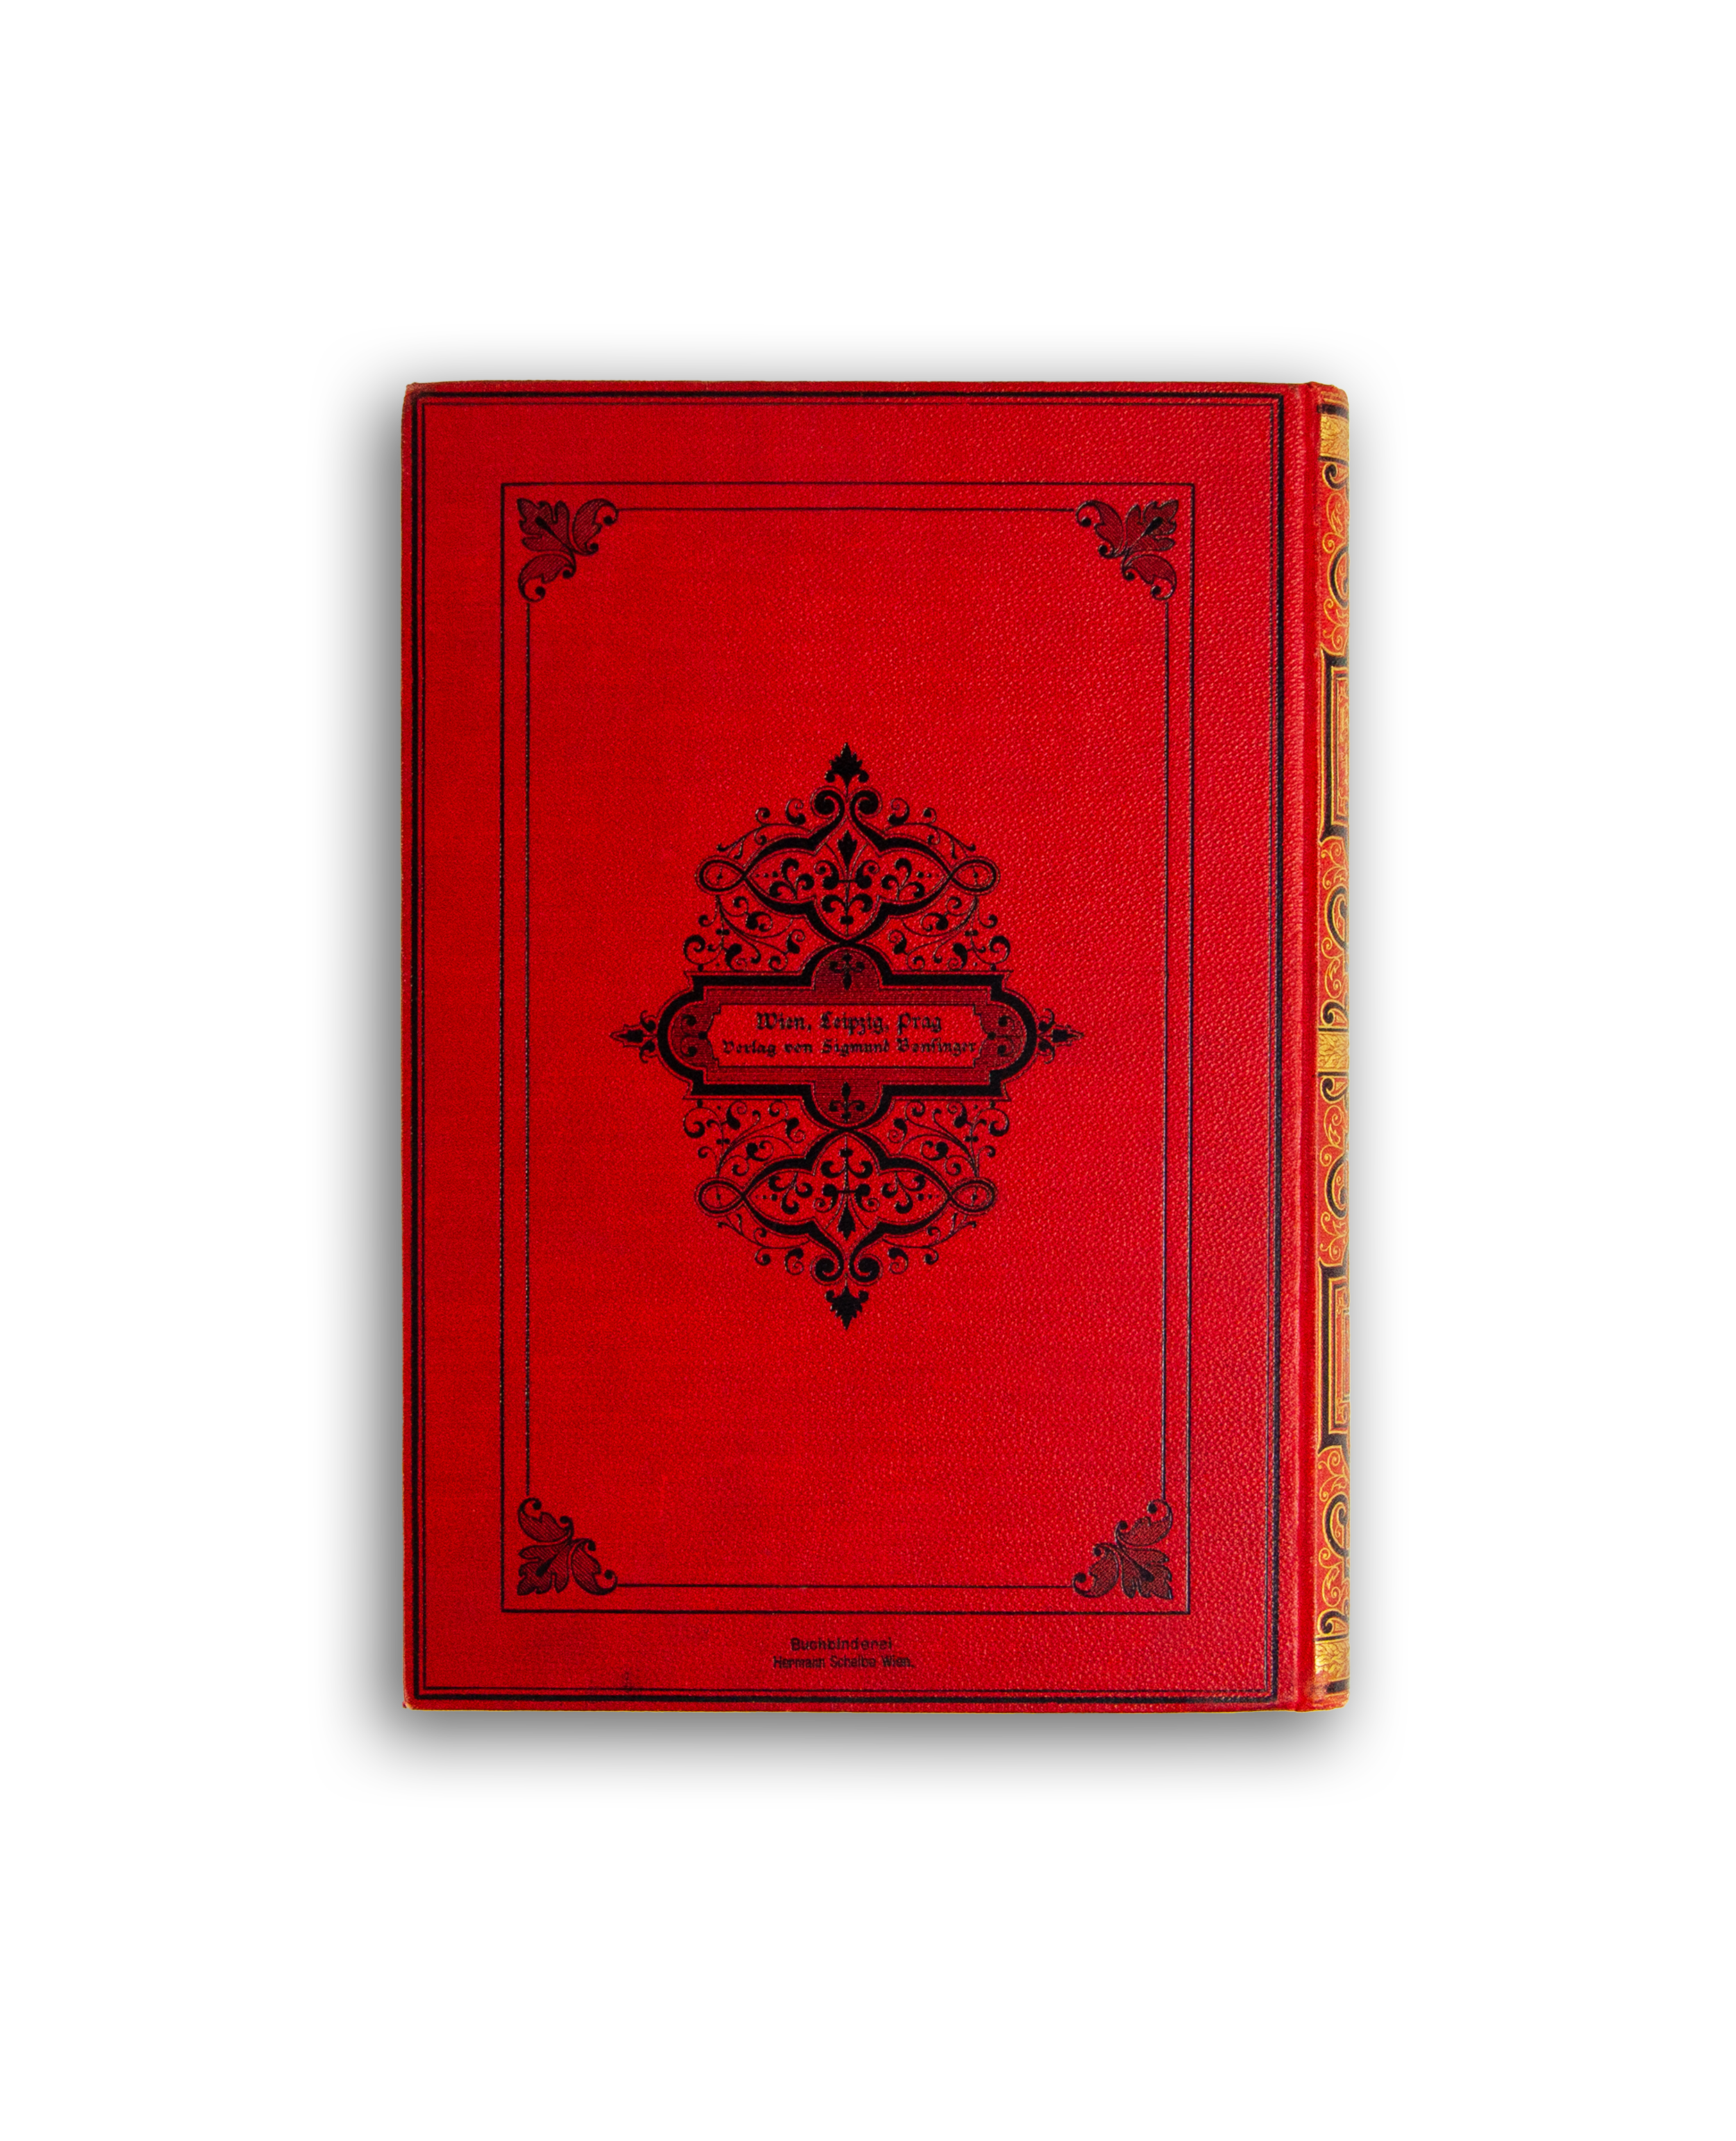 HEINREICH HEINE’S WERKE – Edition 1888